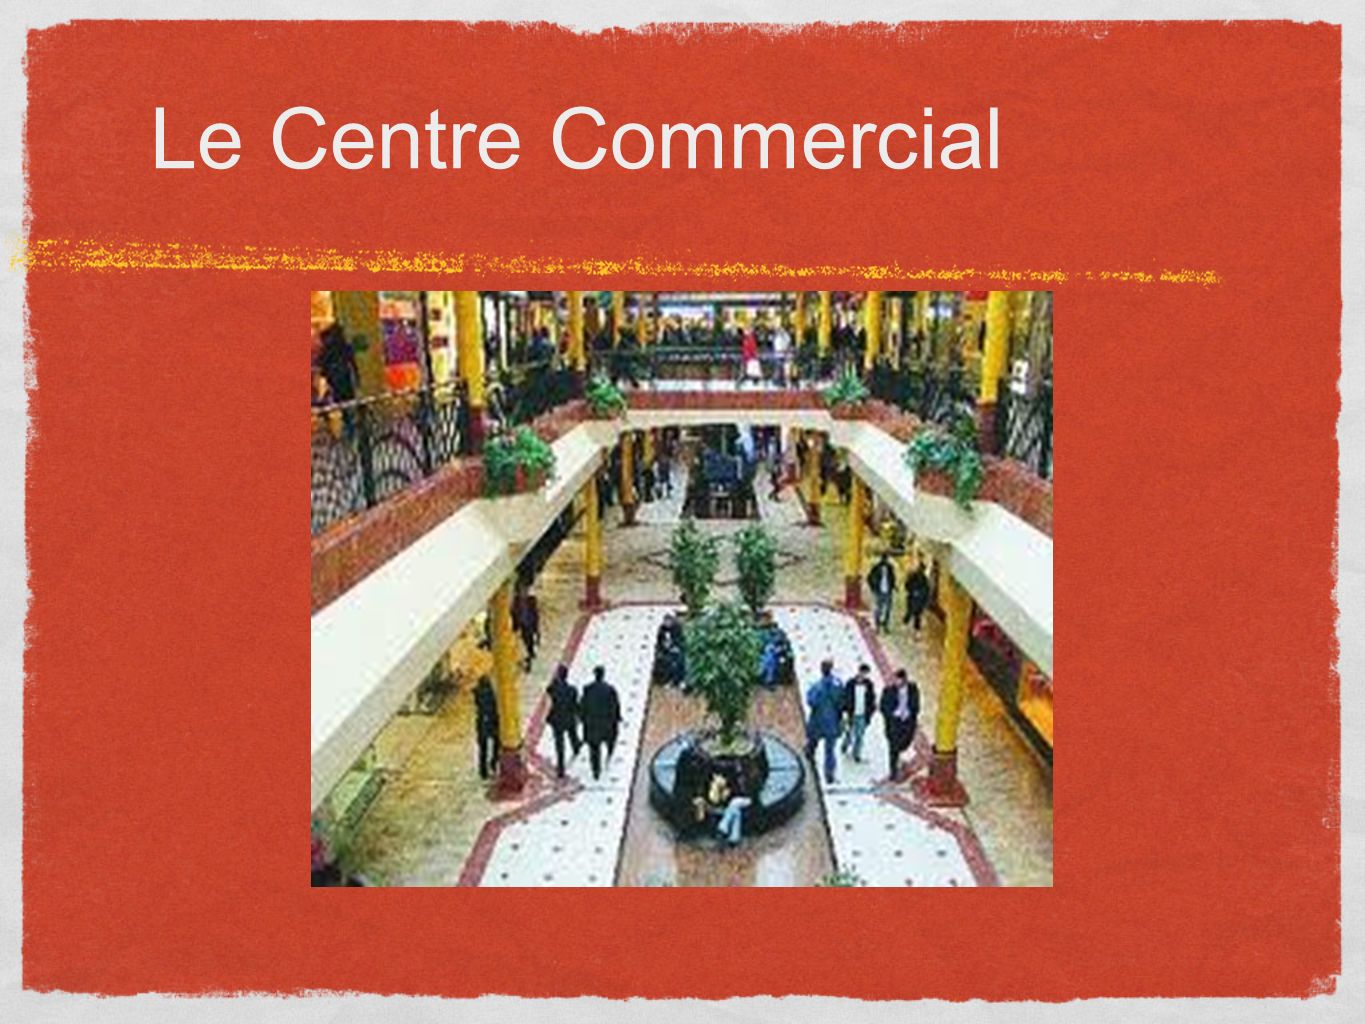 Le Centre Commercial